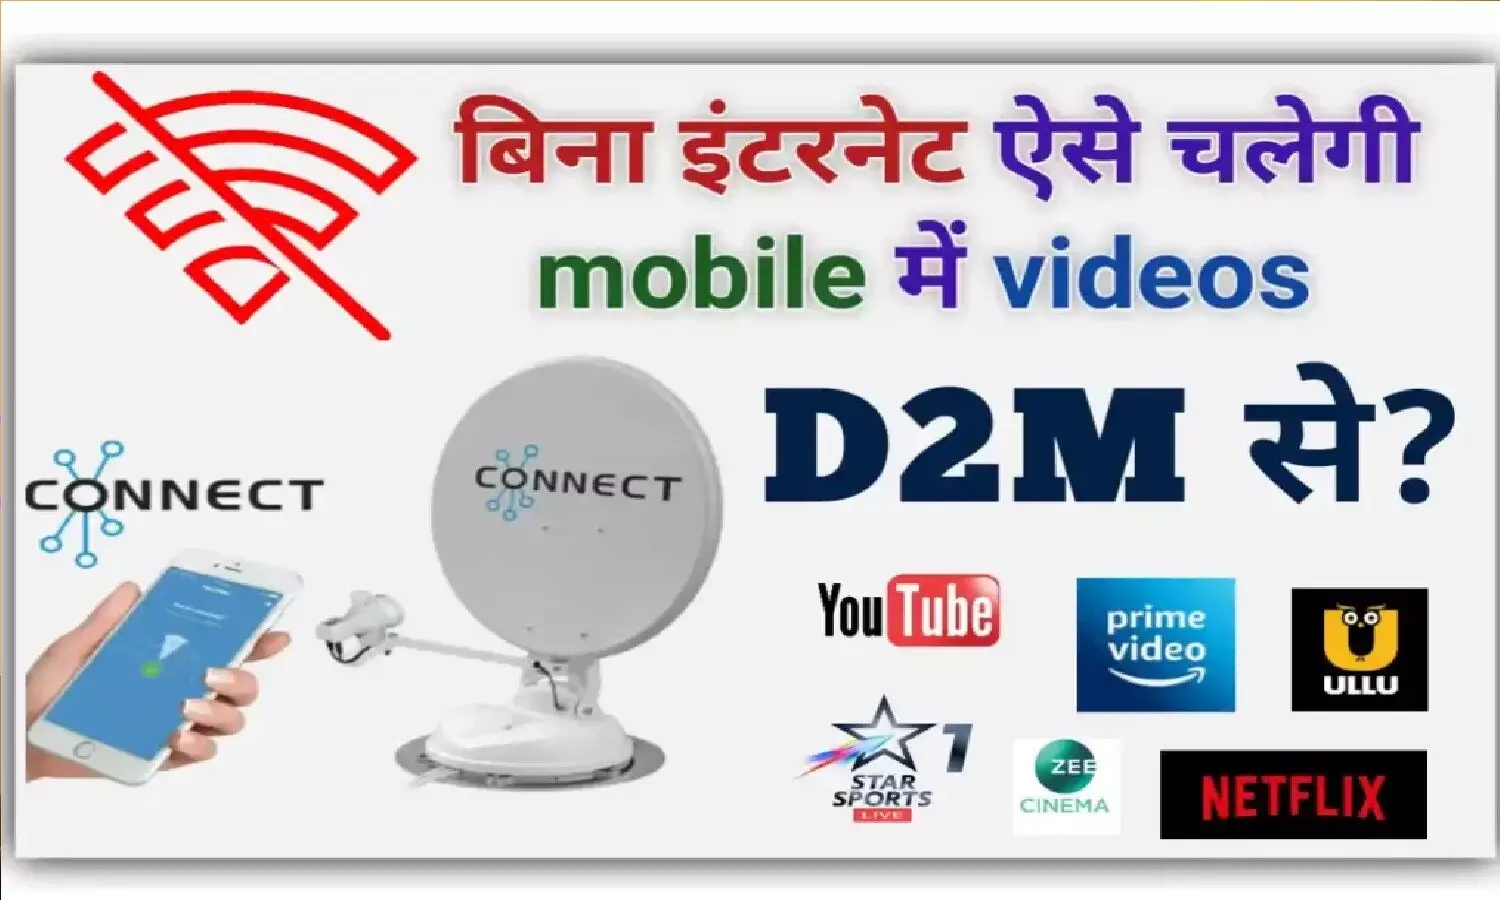 D2H In Smartphone: मोबाइल में बिना इंटरनेट के देख सकते हैं Live TV और OTT Content!